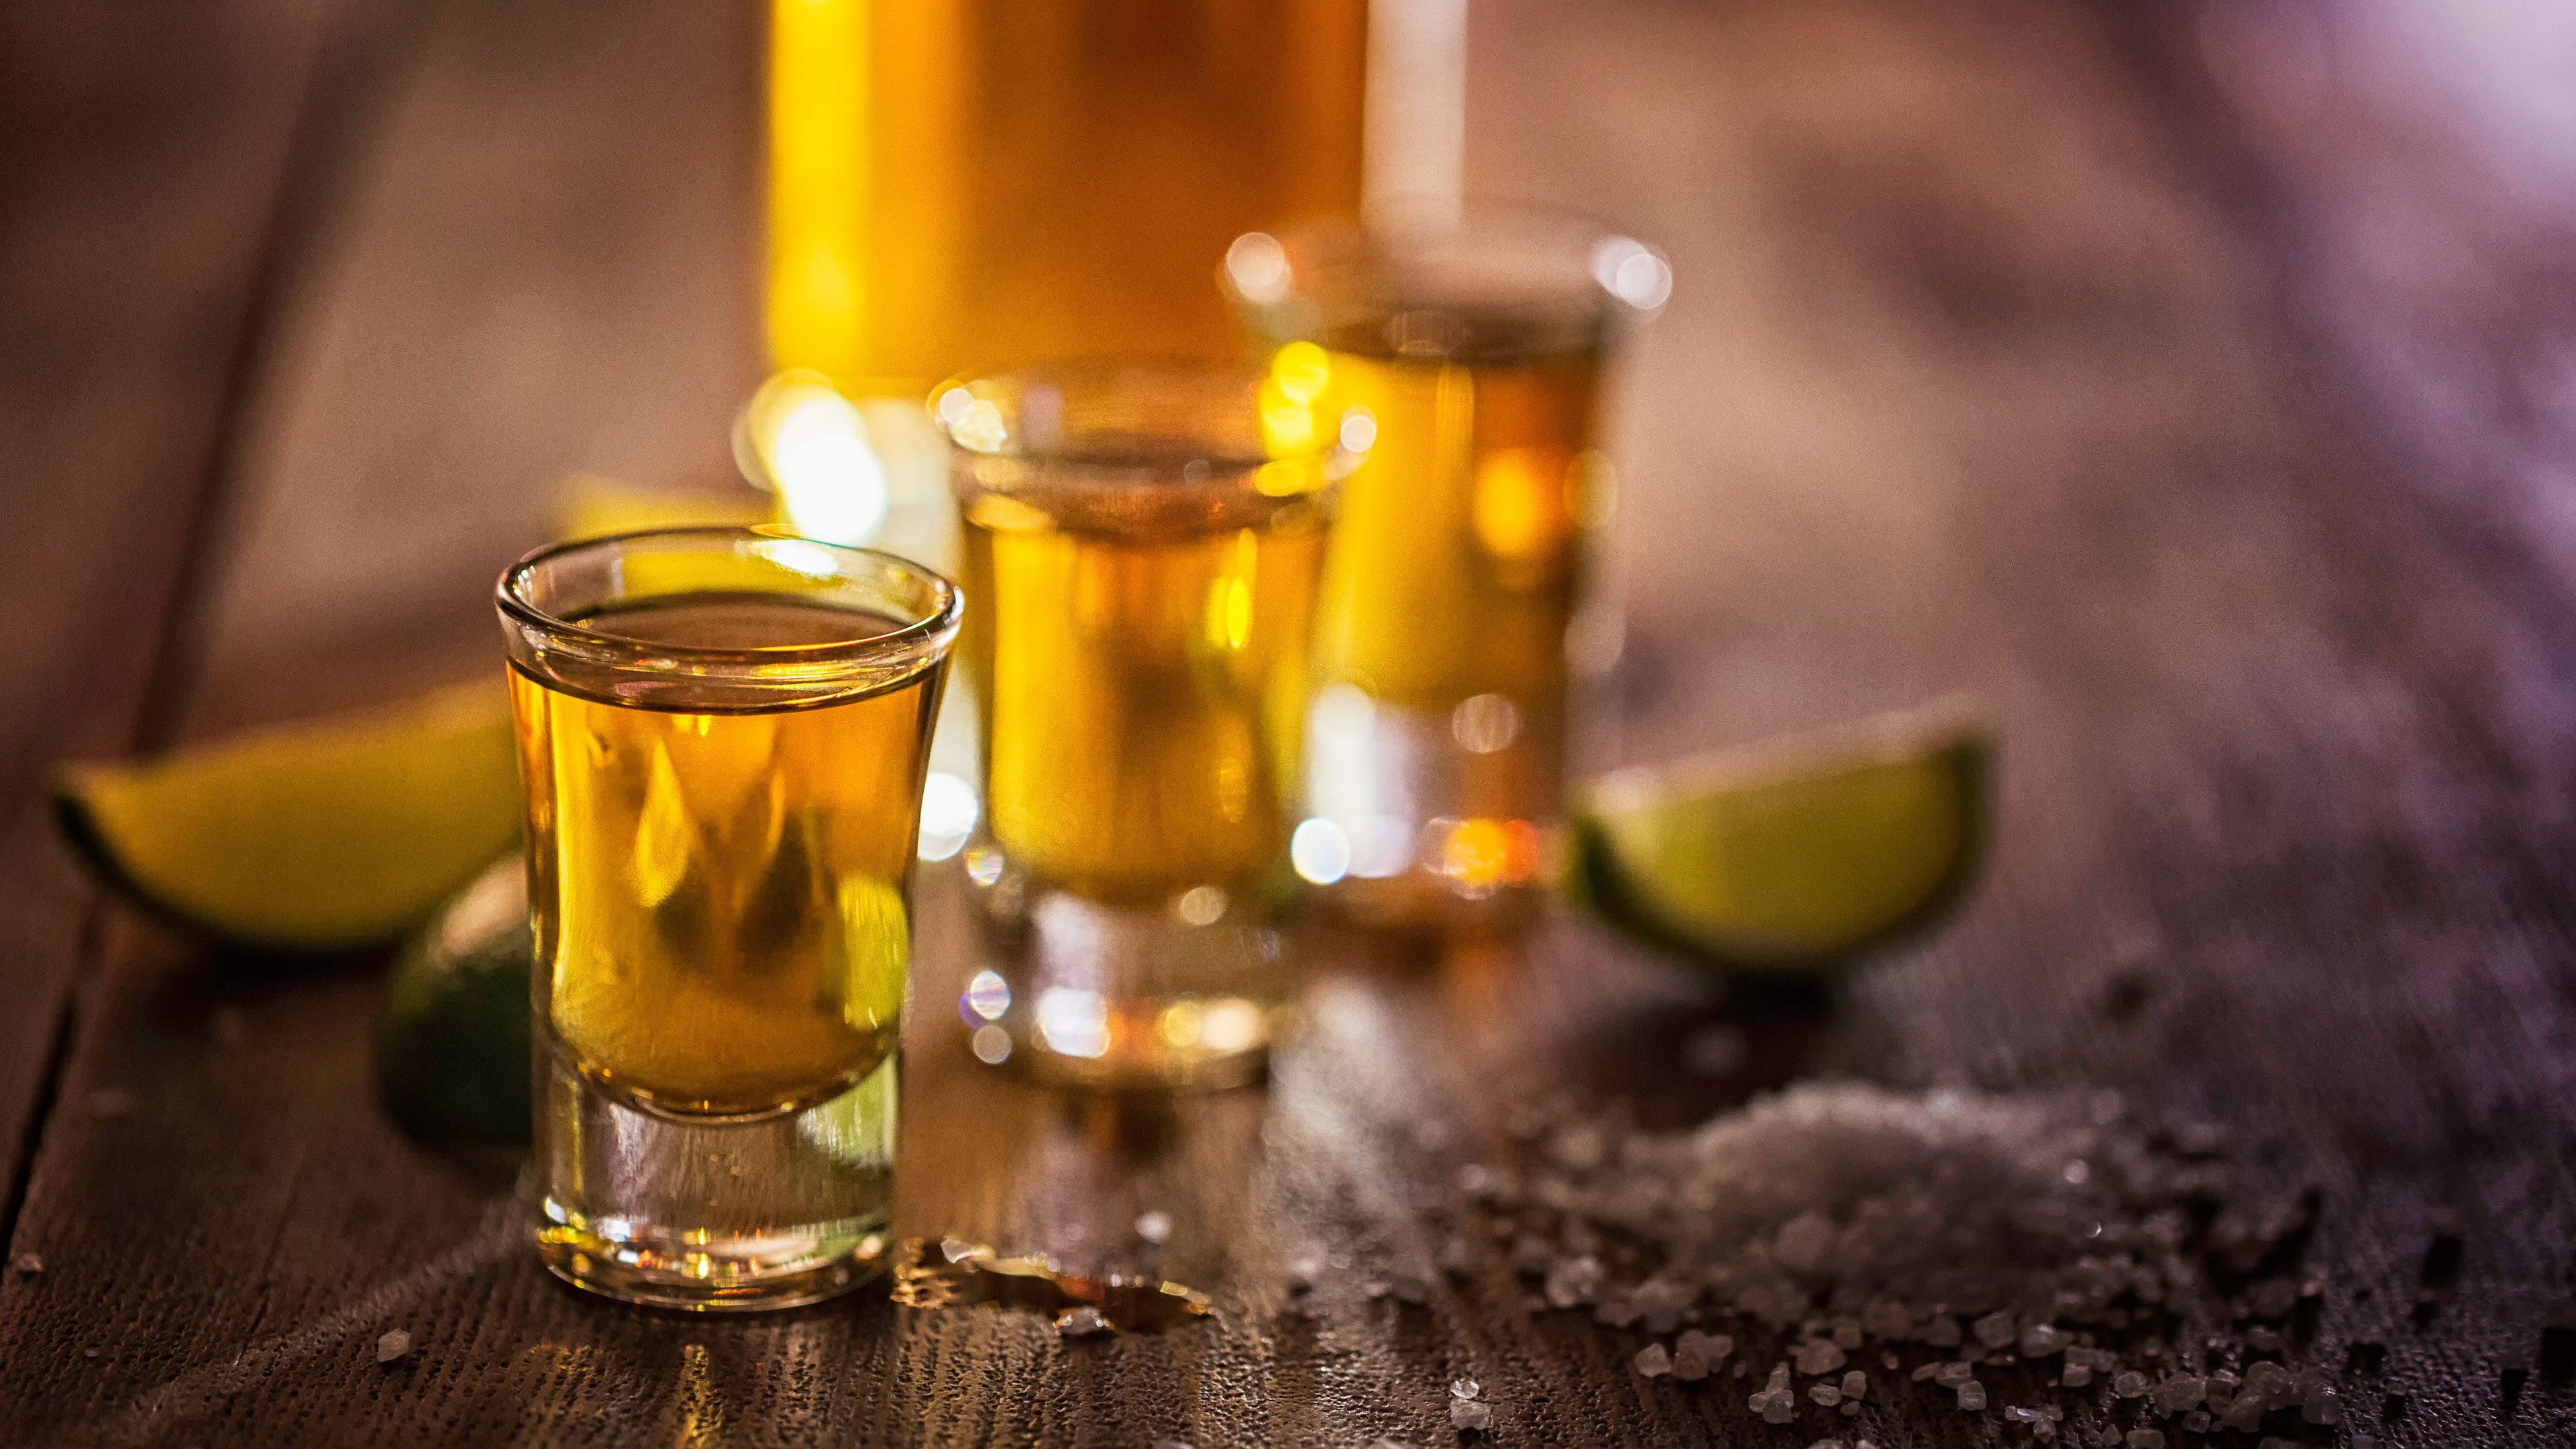 tequila-shots-puerto-vallarta-mexico.jpg